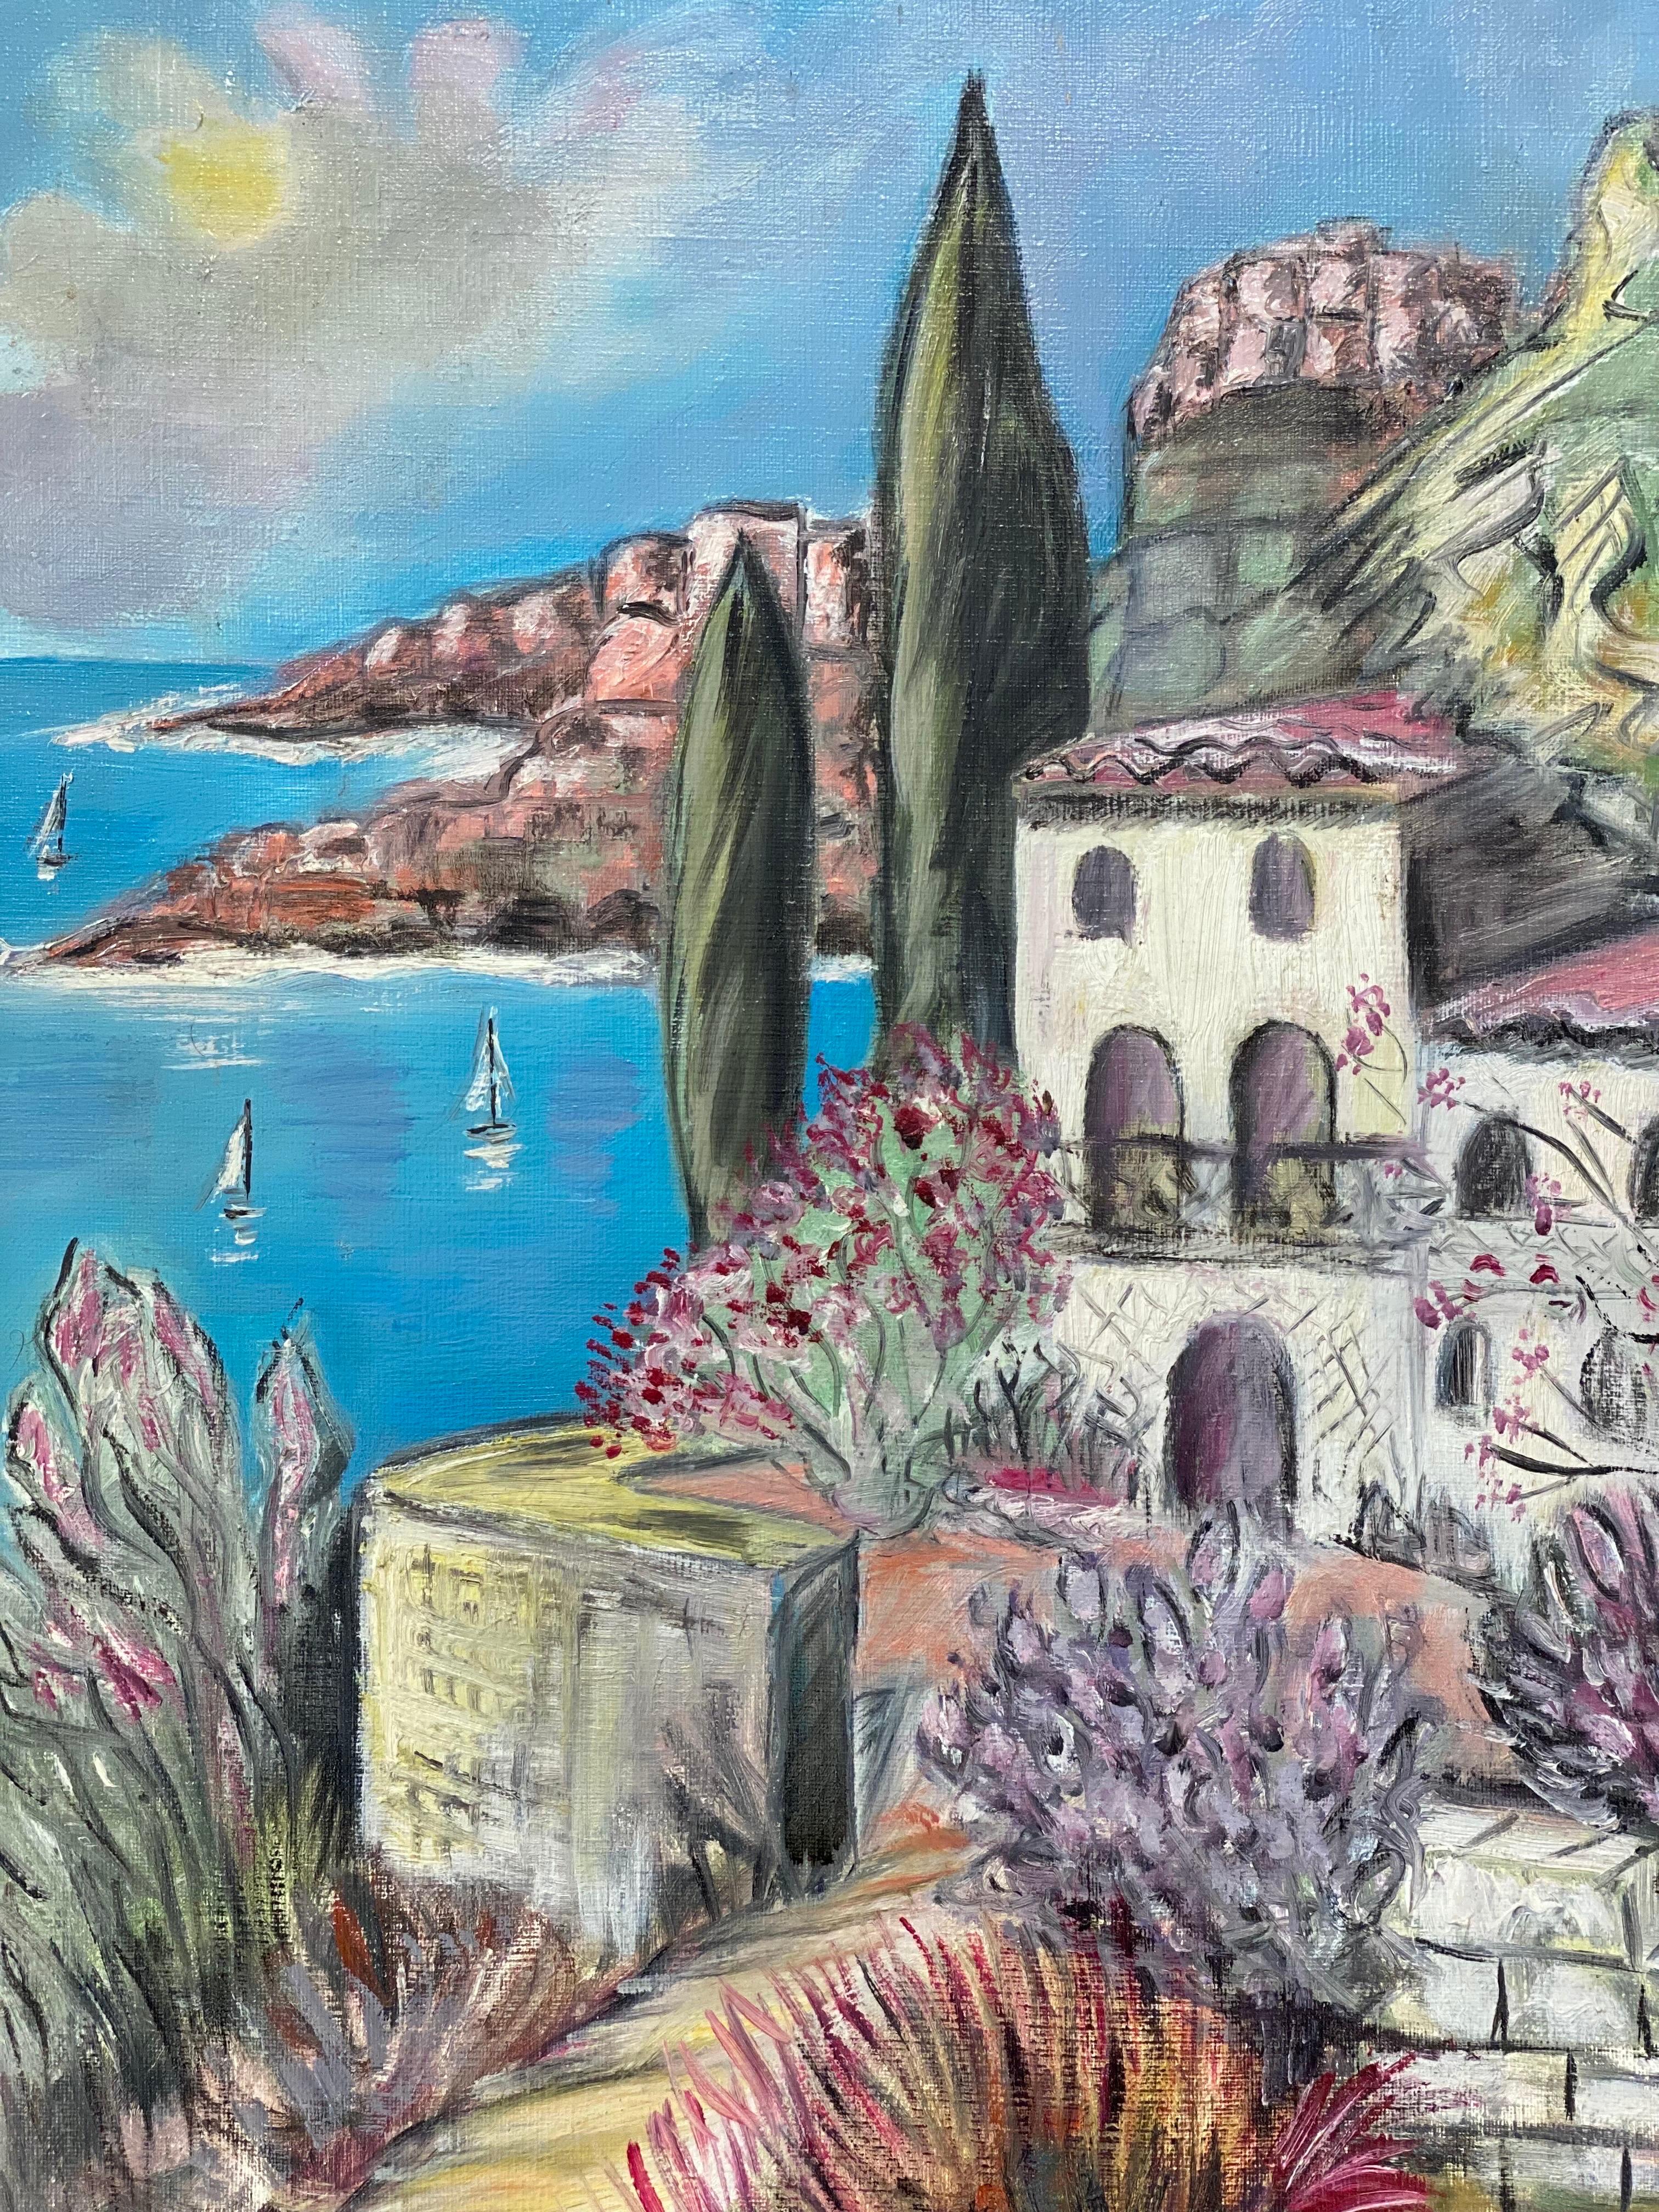 Artisten/Schule: Französische Schule, 20. Jahrhundert, signiert

Titel: La Cote d' Azur, Küstenlandschaft der Provence mit tiefblauem Meer und schönen alten französischen Villen an der Küste. 

Medium: Ölgemälde auf Leinwand, ungerahmt 

Leinwand: